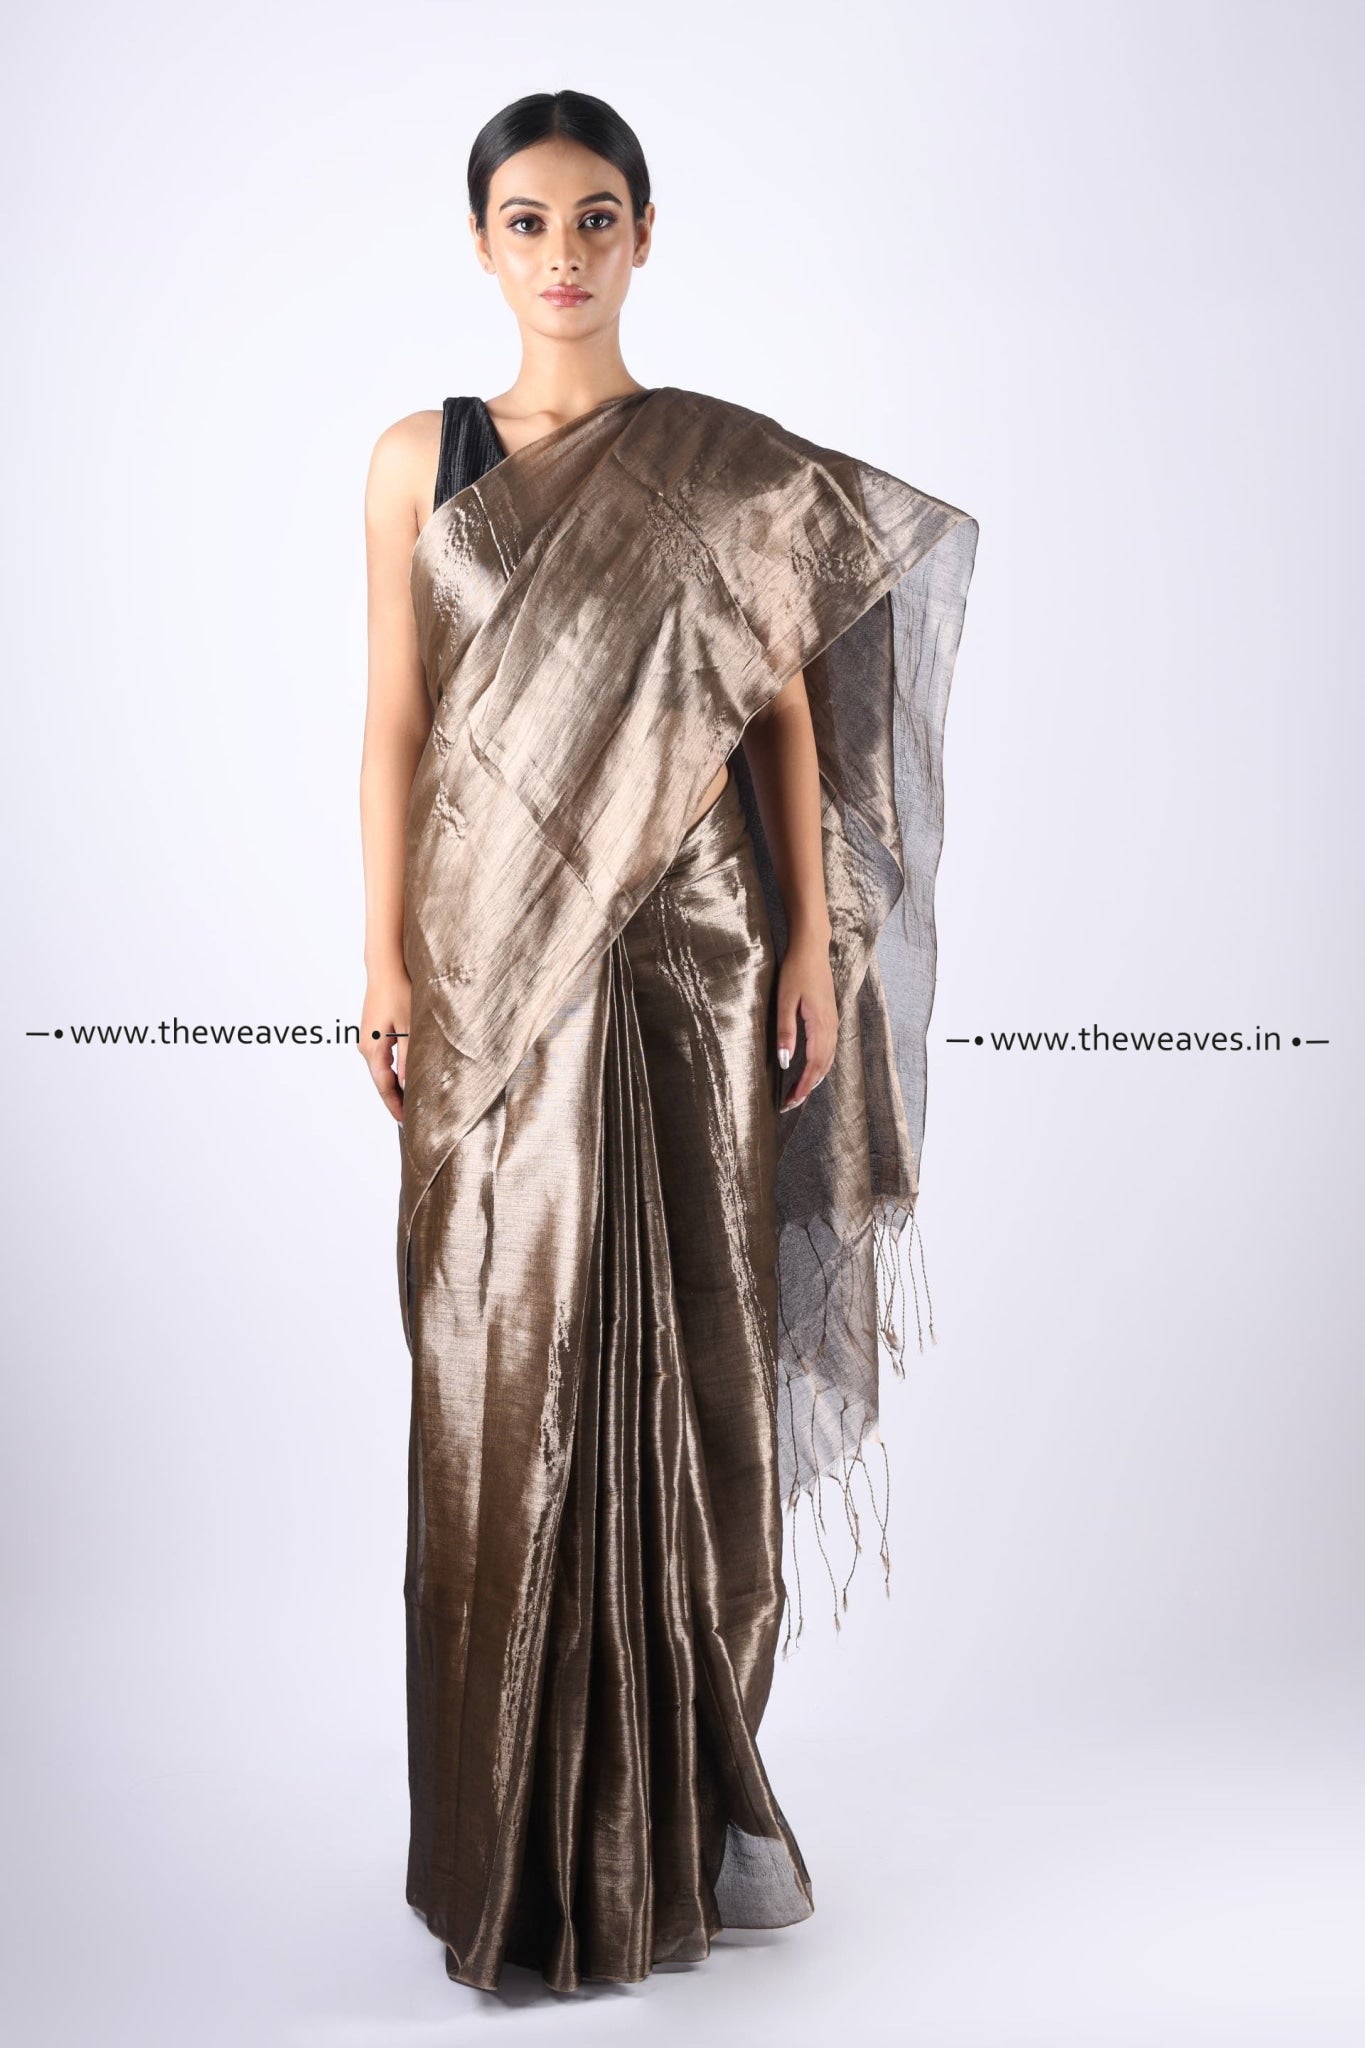 Gold Colour Banarasi Silk Saree